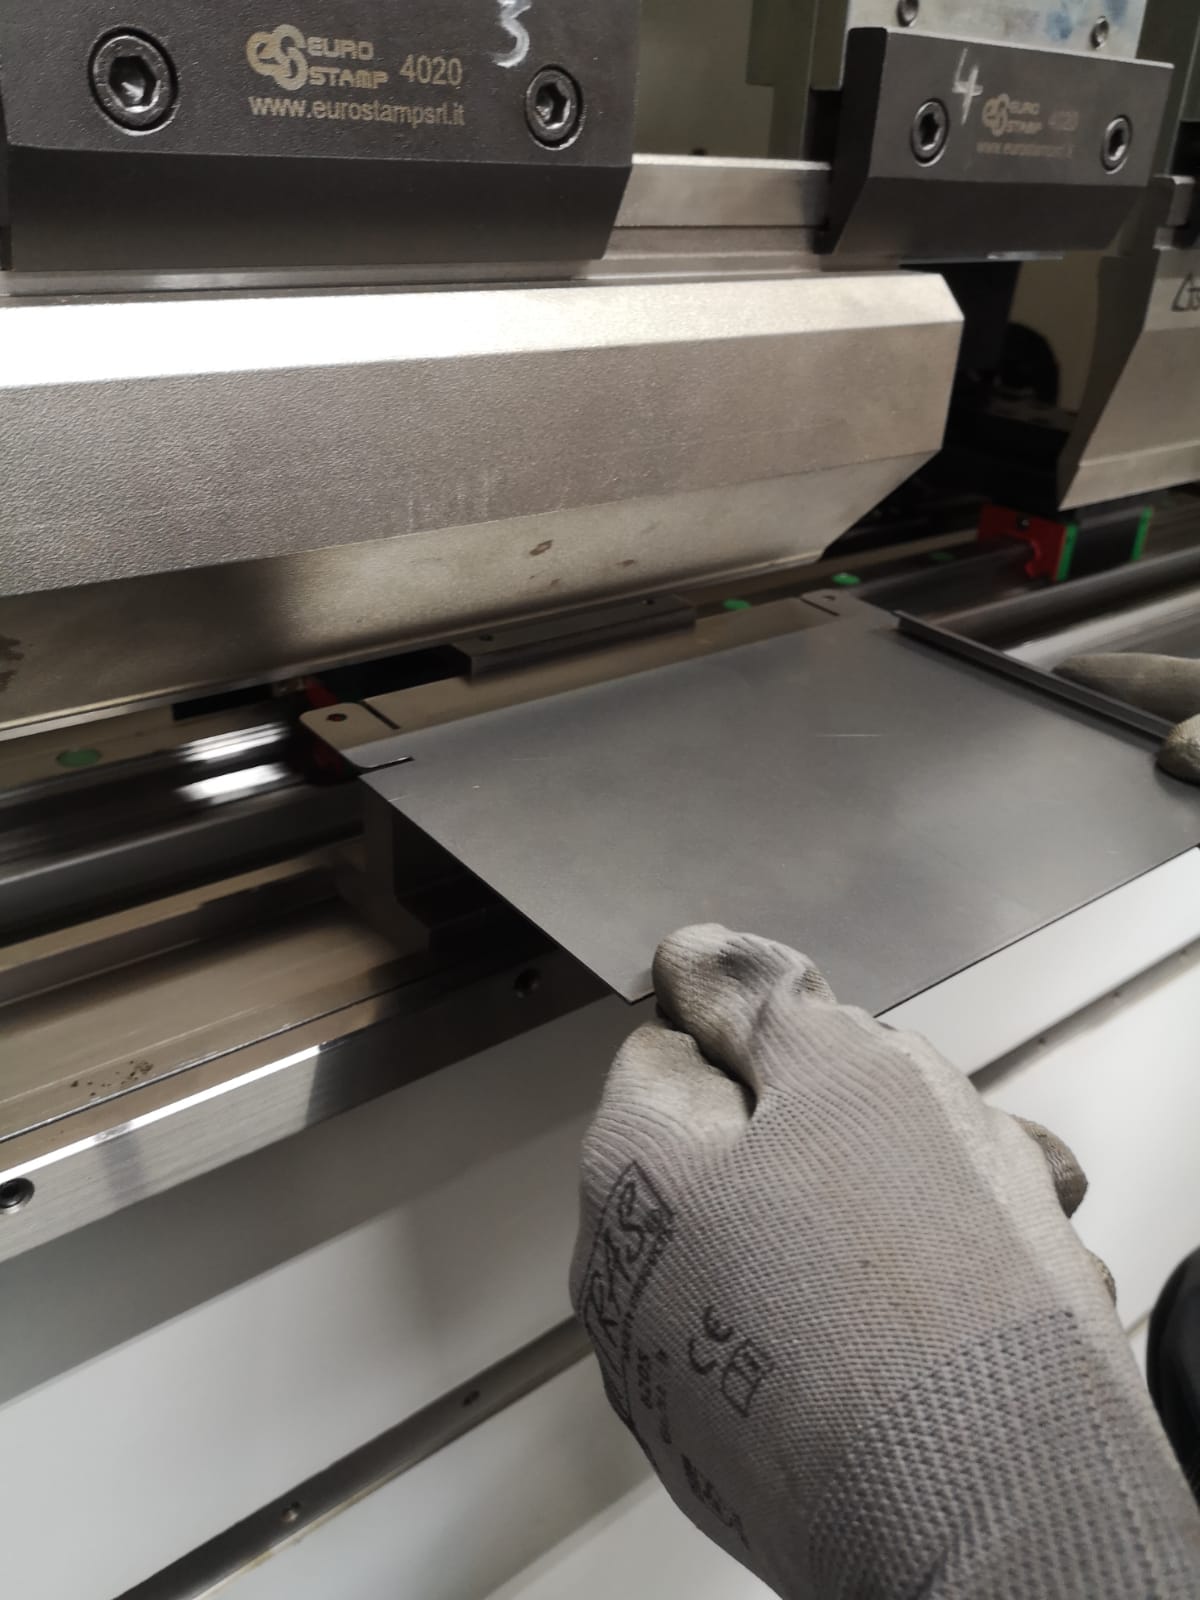 CNC-Abkantpresse bei Rostikal in Aktion, präzises Biegen eines Metallblechs für Edelrost-Dekorationen